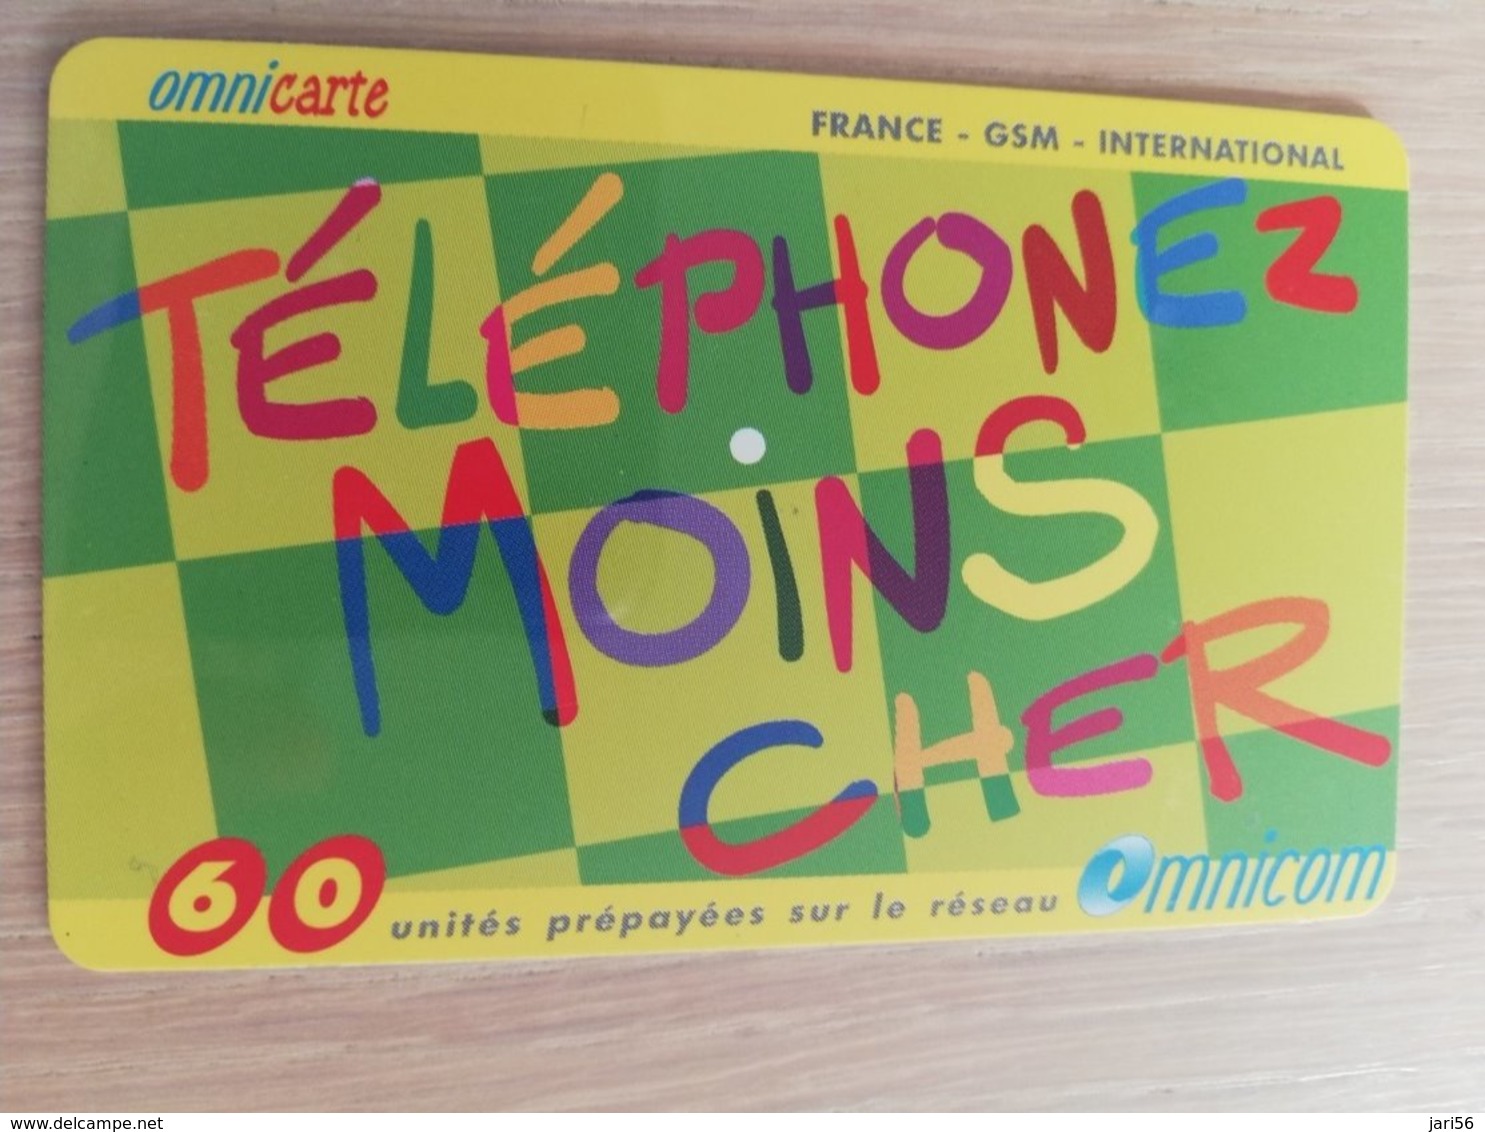 FRANCE/FRANKRIJK  OMNICARTE TELEPHONE MOINS CHER 60 UNITS PREPAID  USED    ** 1510** - Mobicartes (GSM/SIM)